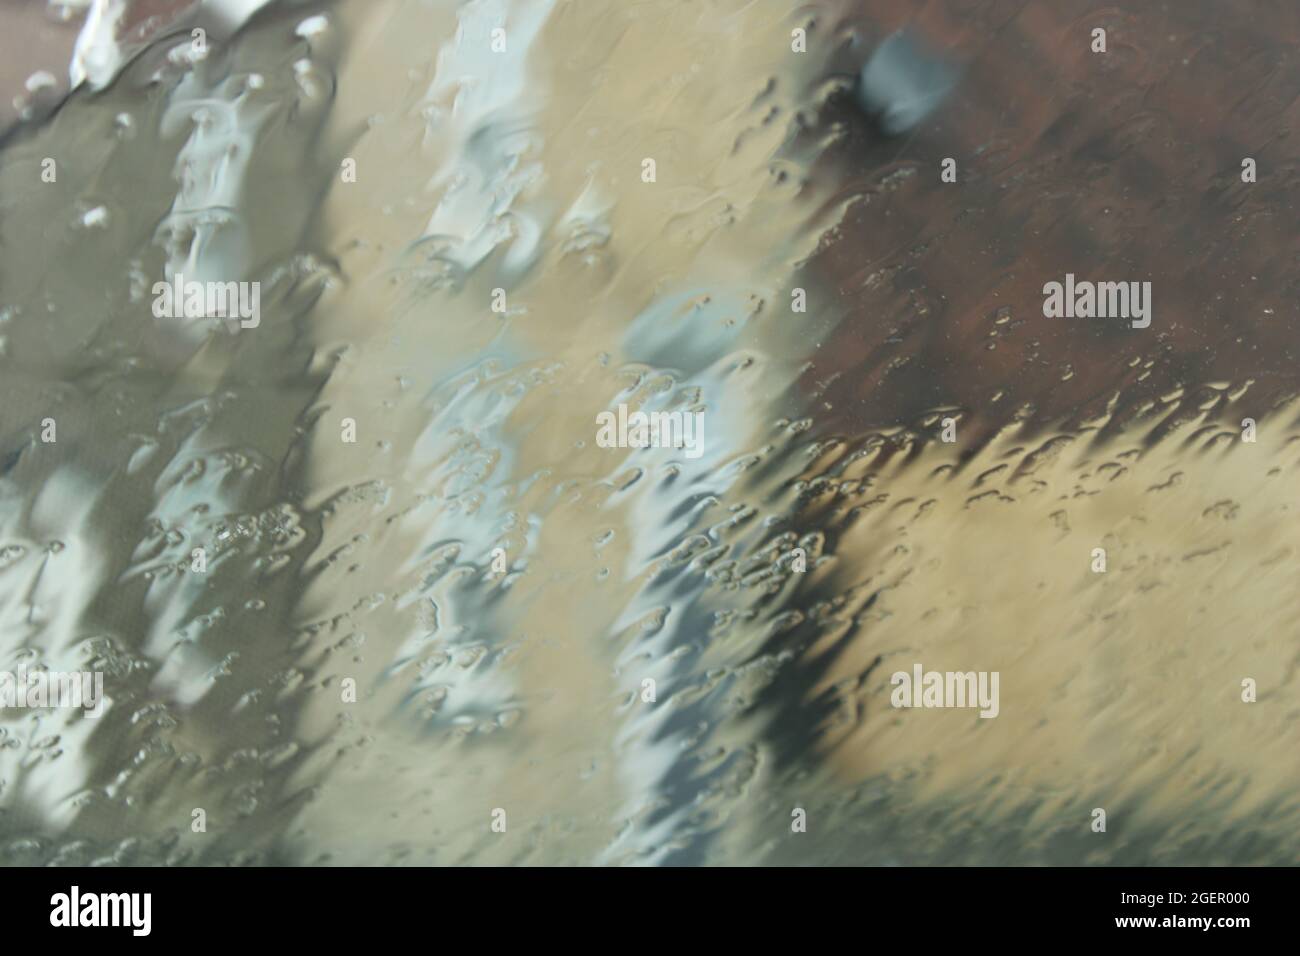 Les bâtiments sont vus par une fenêtre recouverte de pluie, ce qui se traduit par un arrière-plan abstrait texturé Banque D'Images